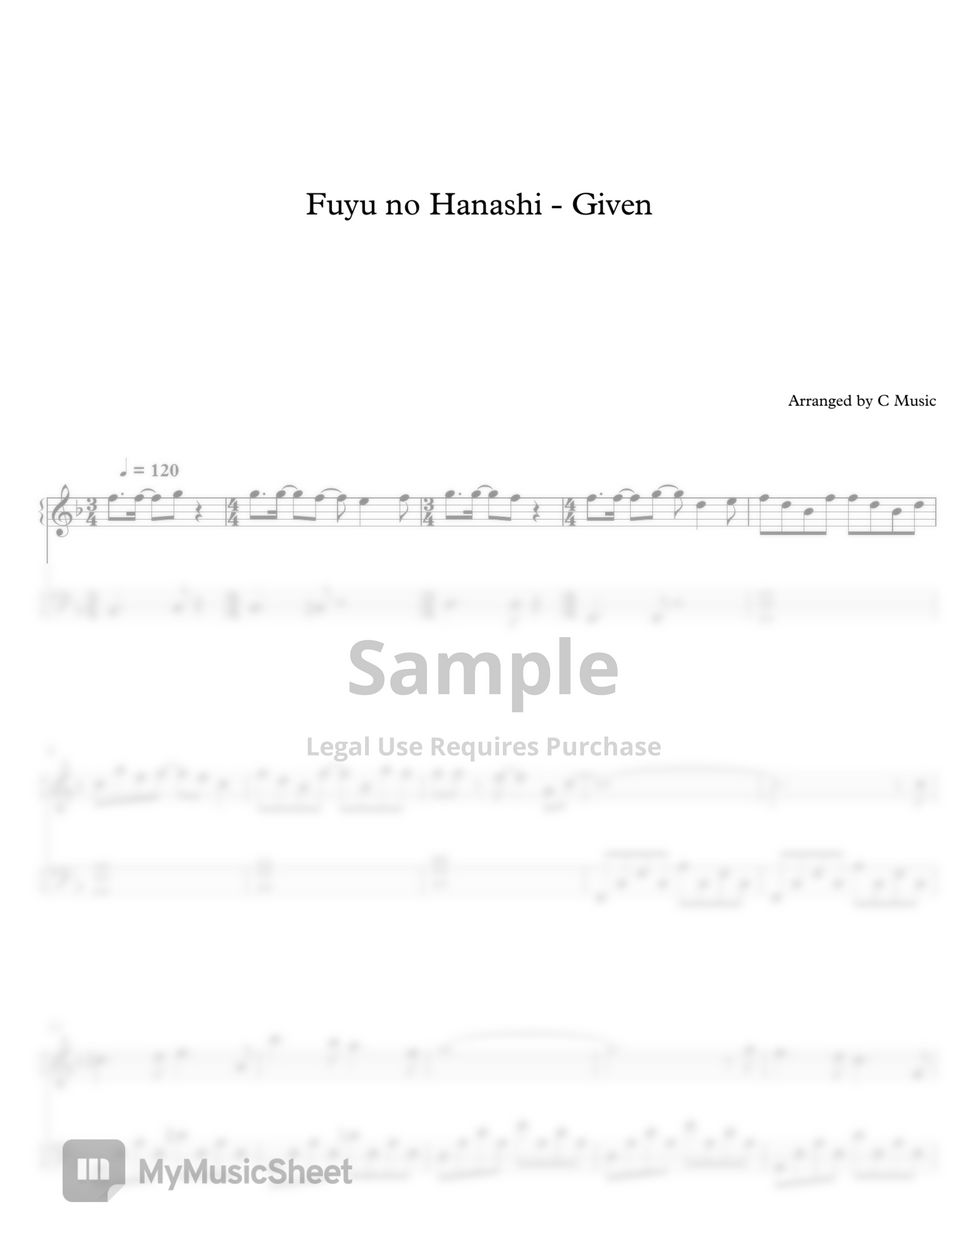 Fuyu no Hanashi - Given by C Music